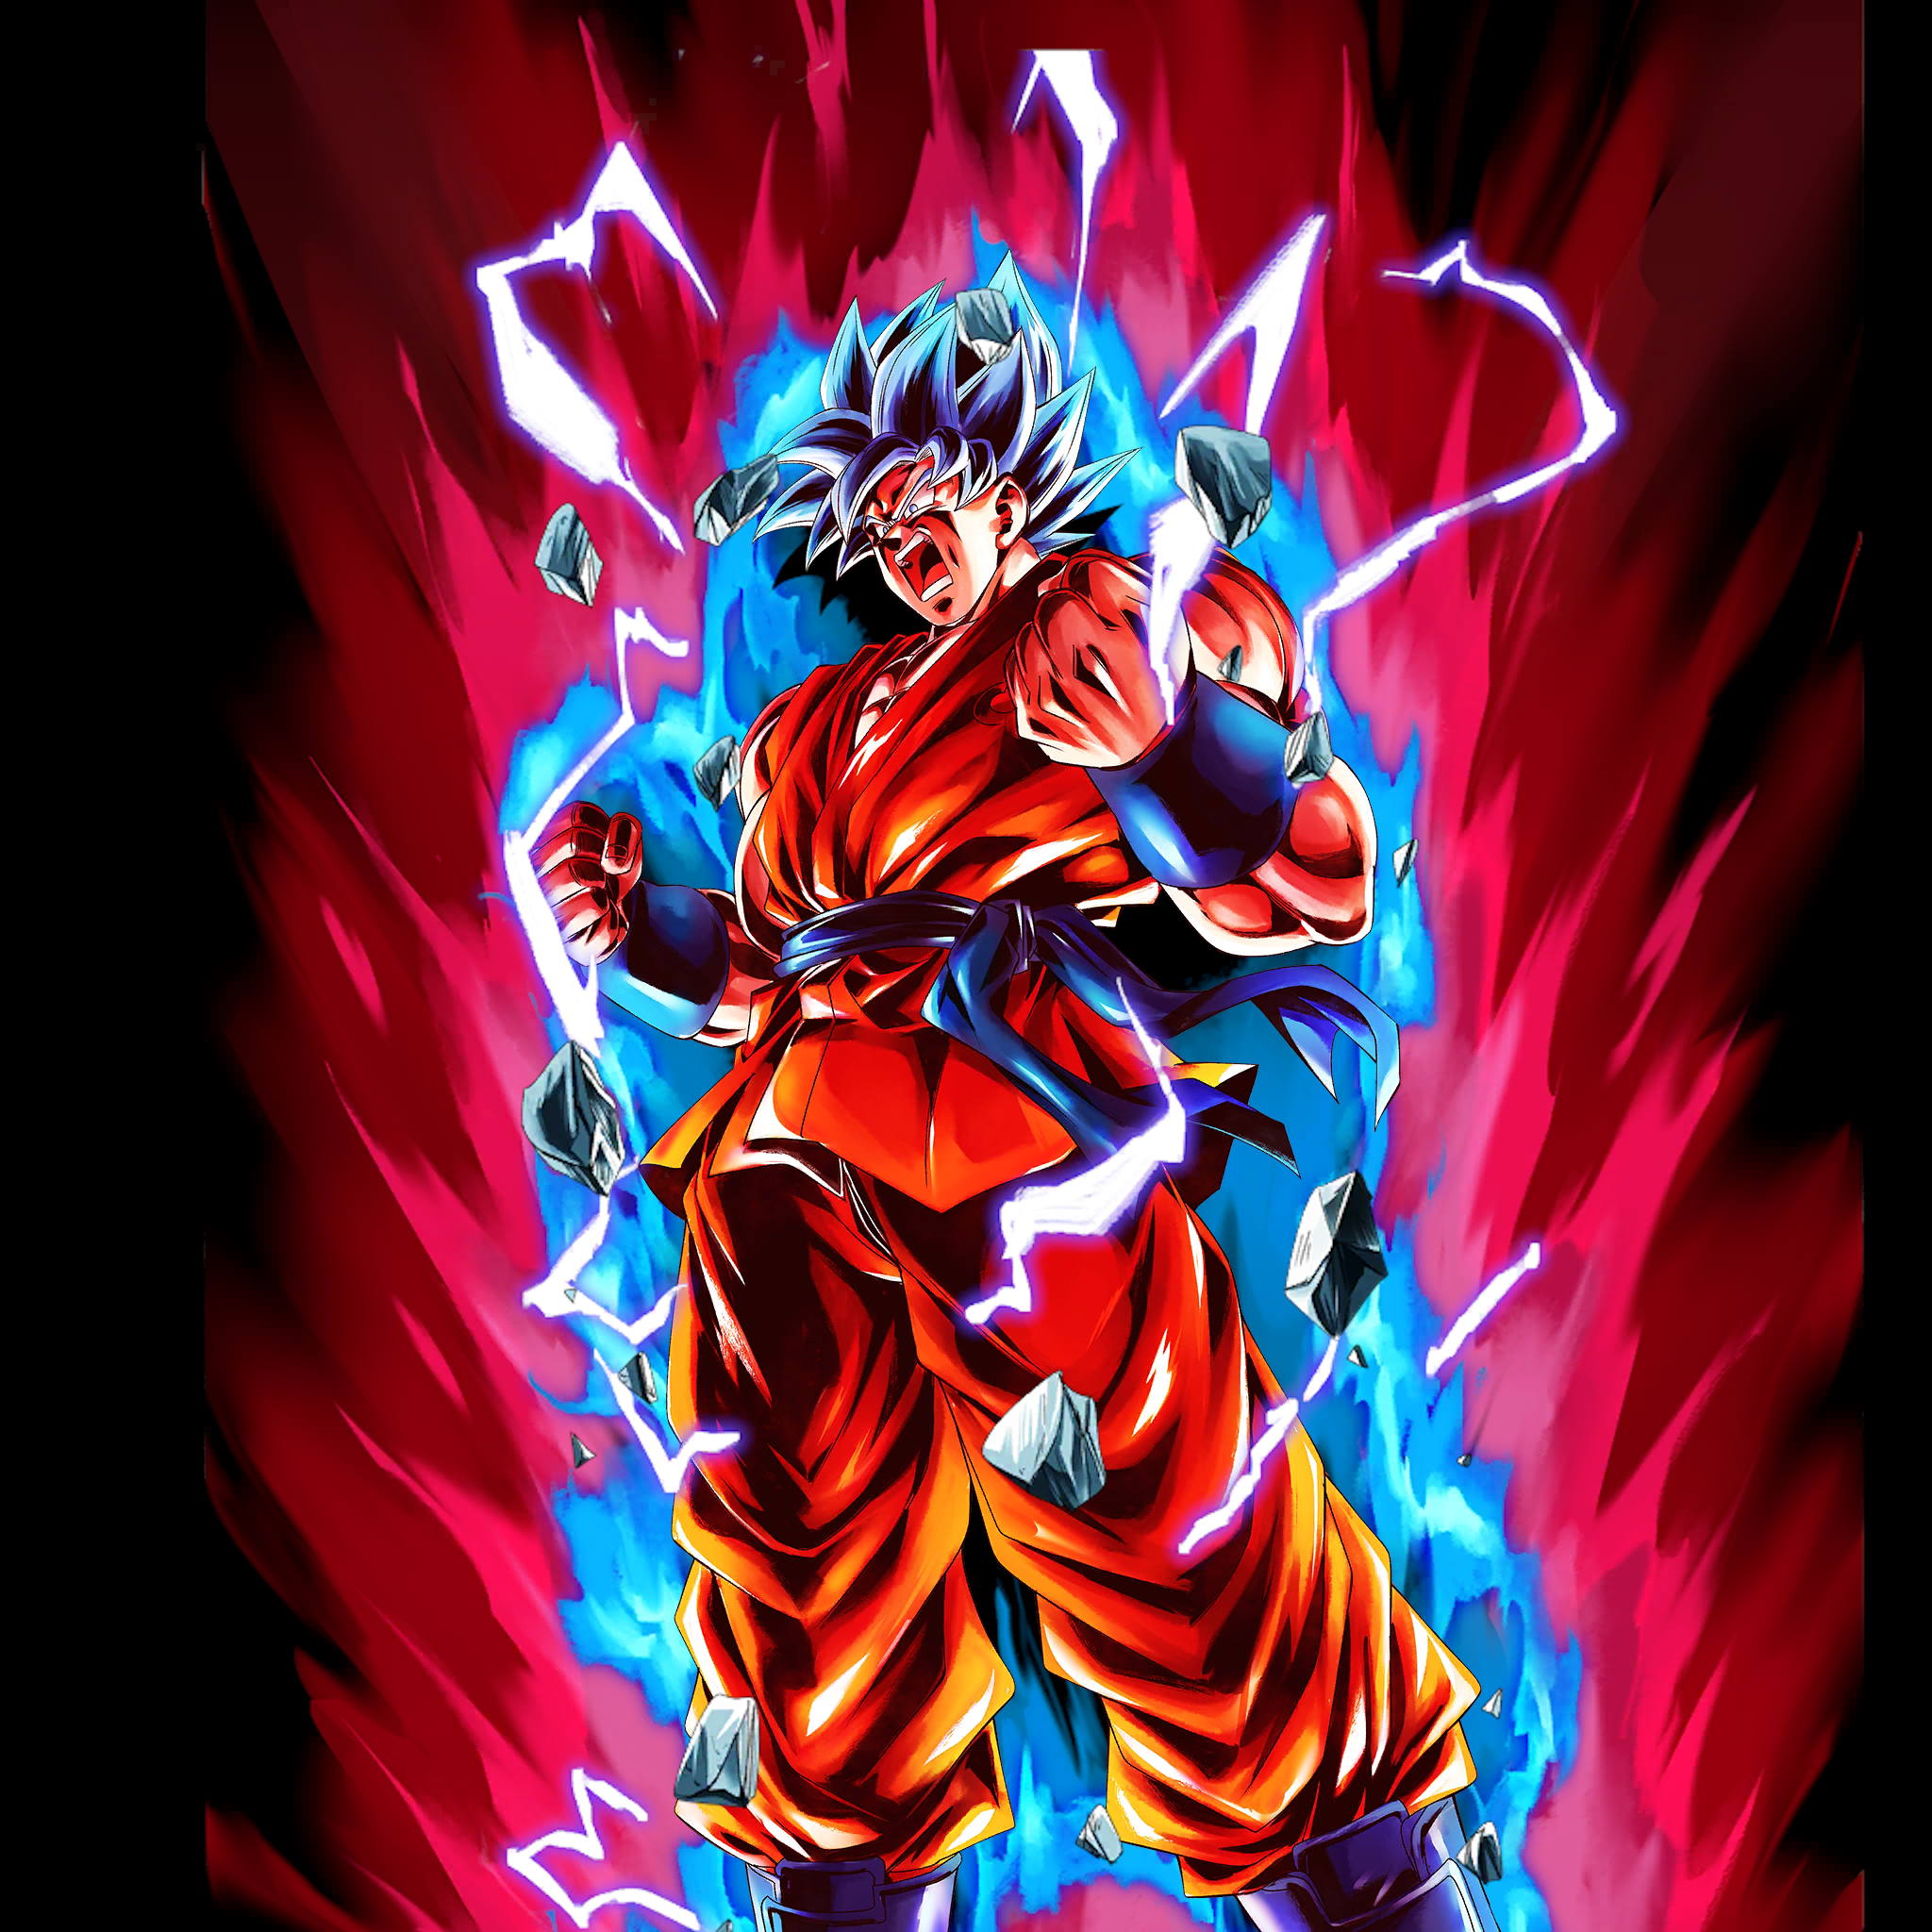 Super Saiyan blue kk Goku